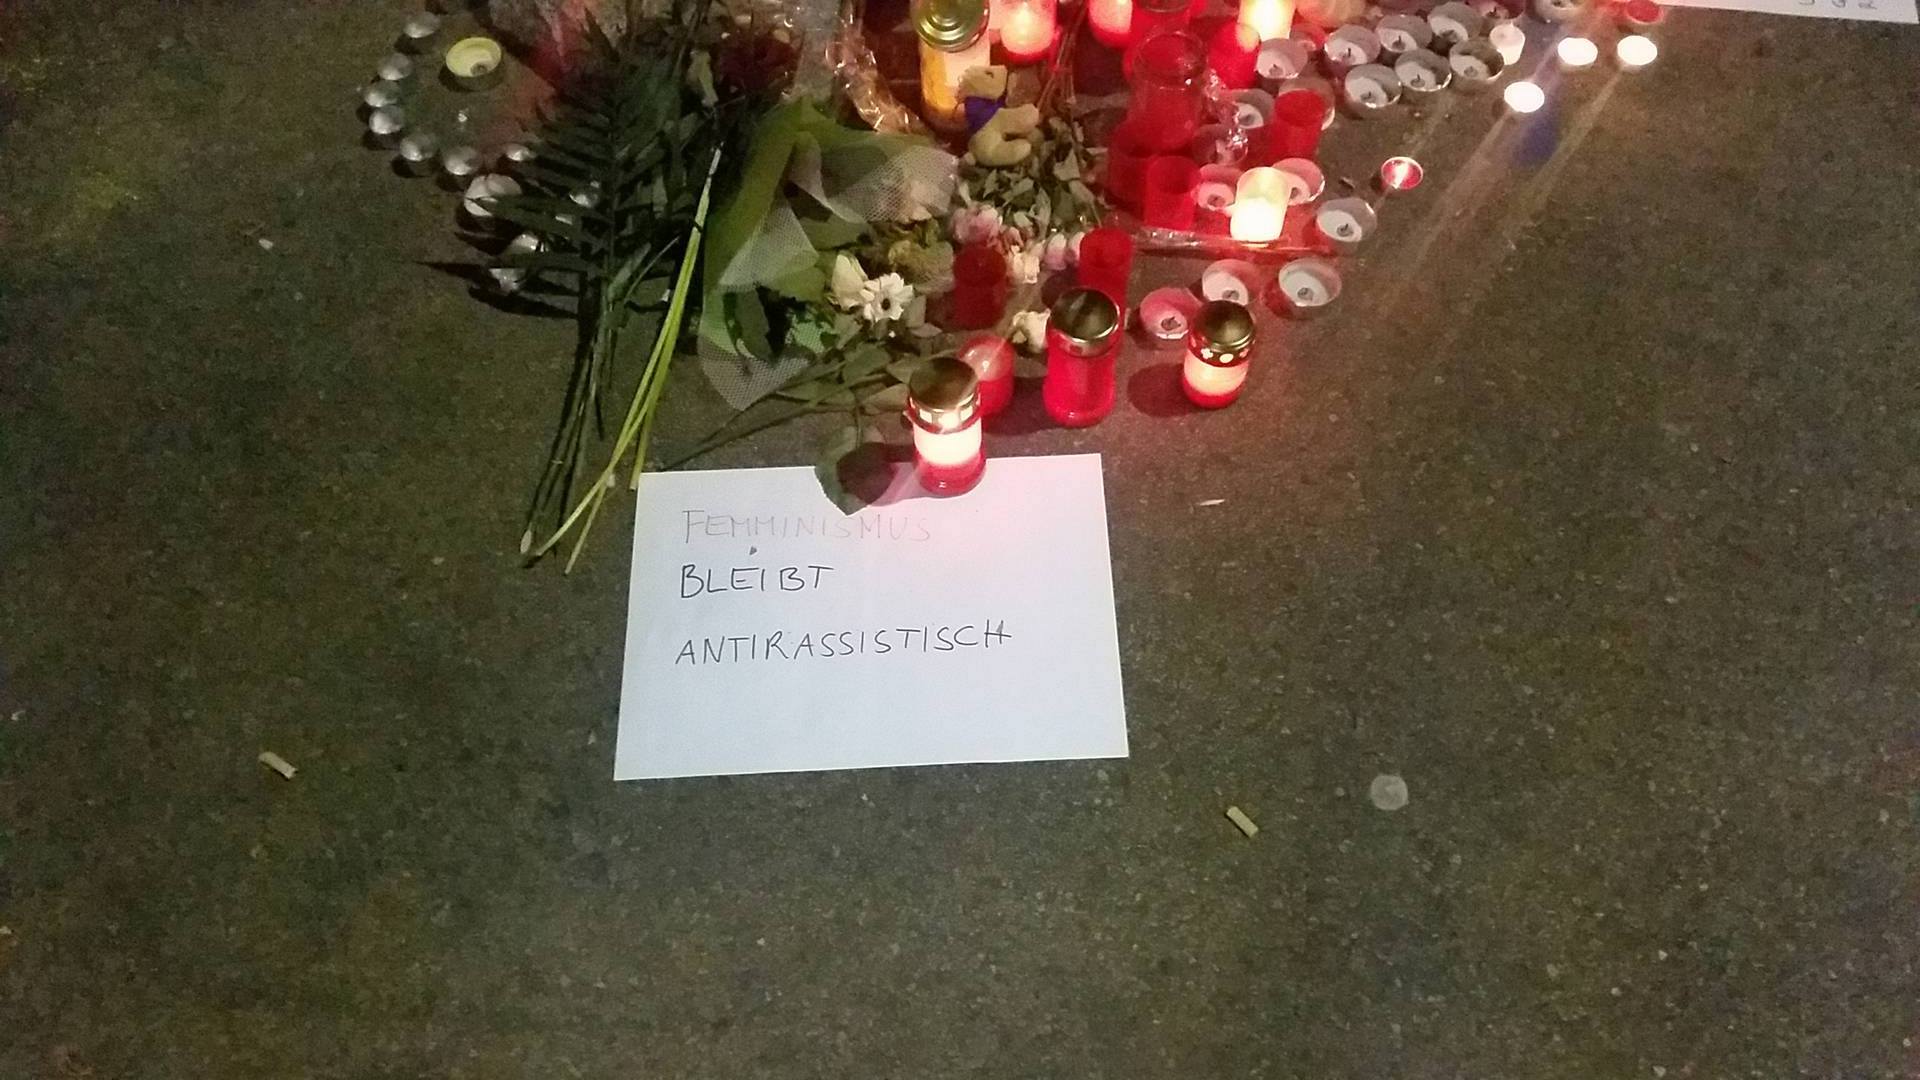 "Feminismus bleibt antirassistisch" Mahnwache am Yppenplatz, 09.05.2016